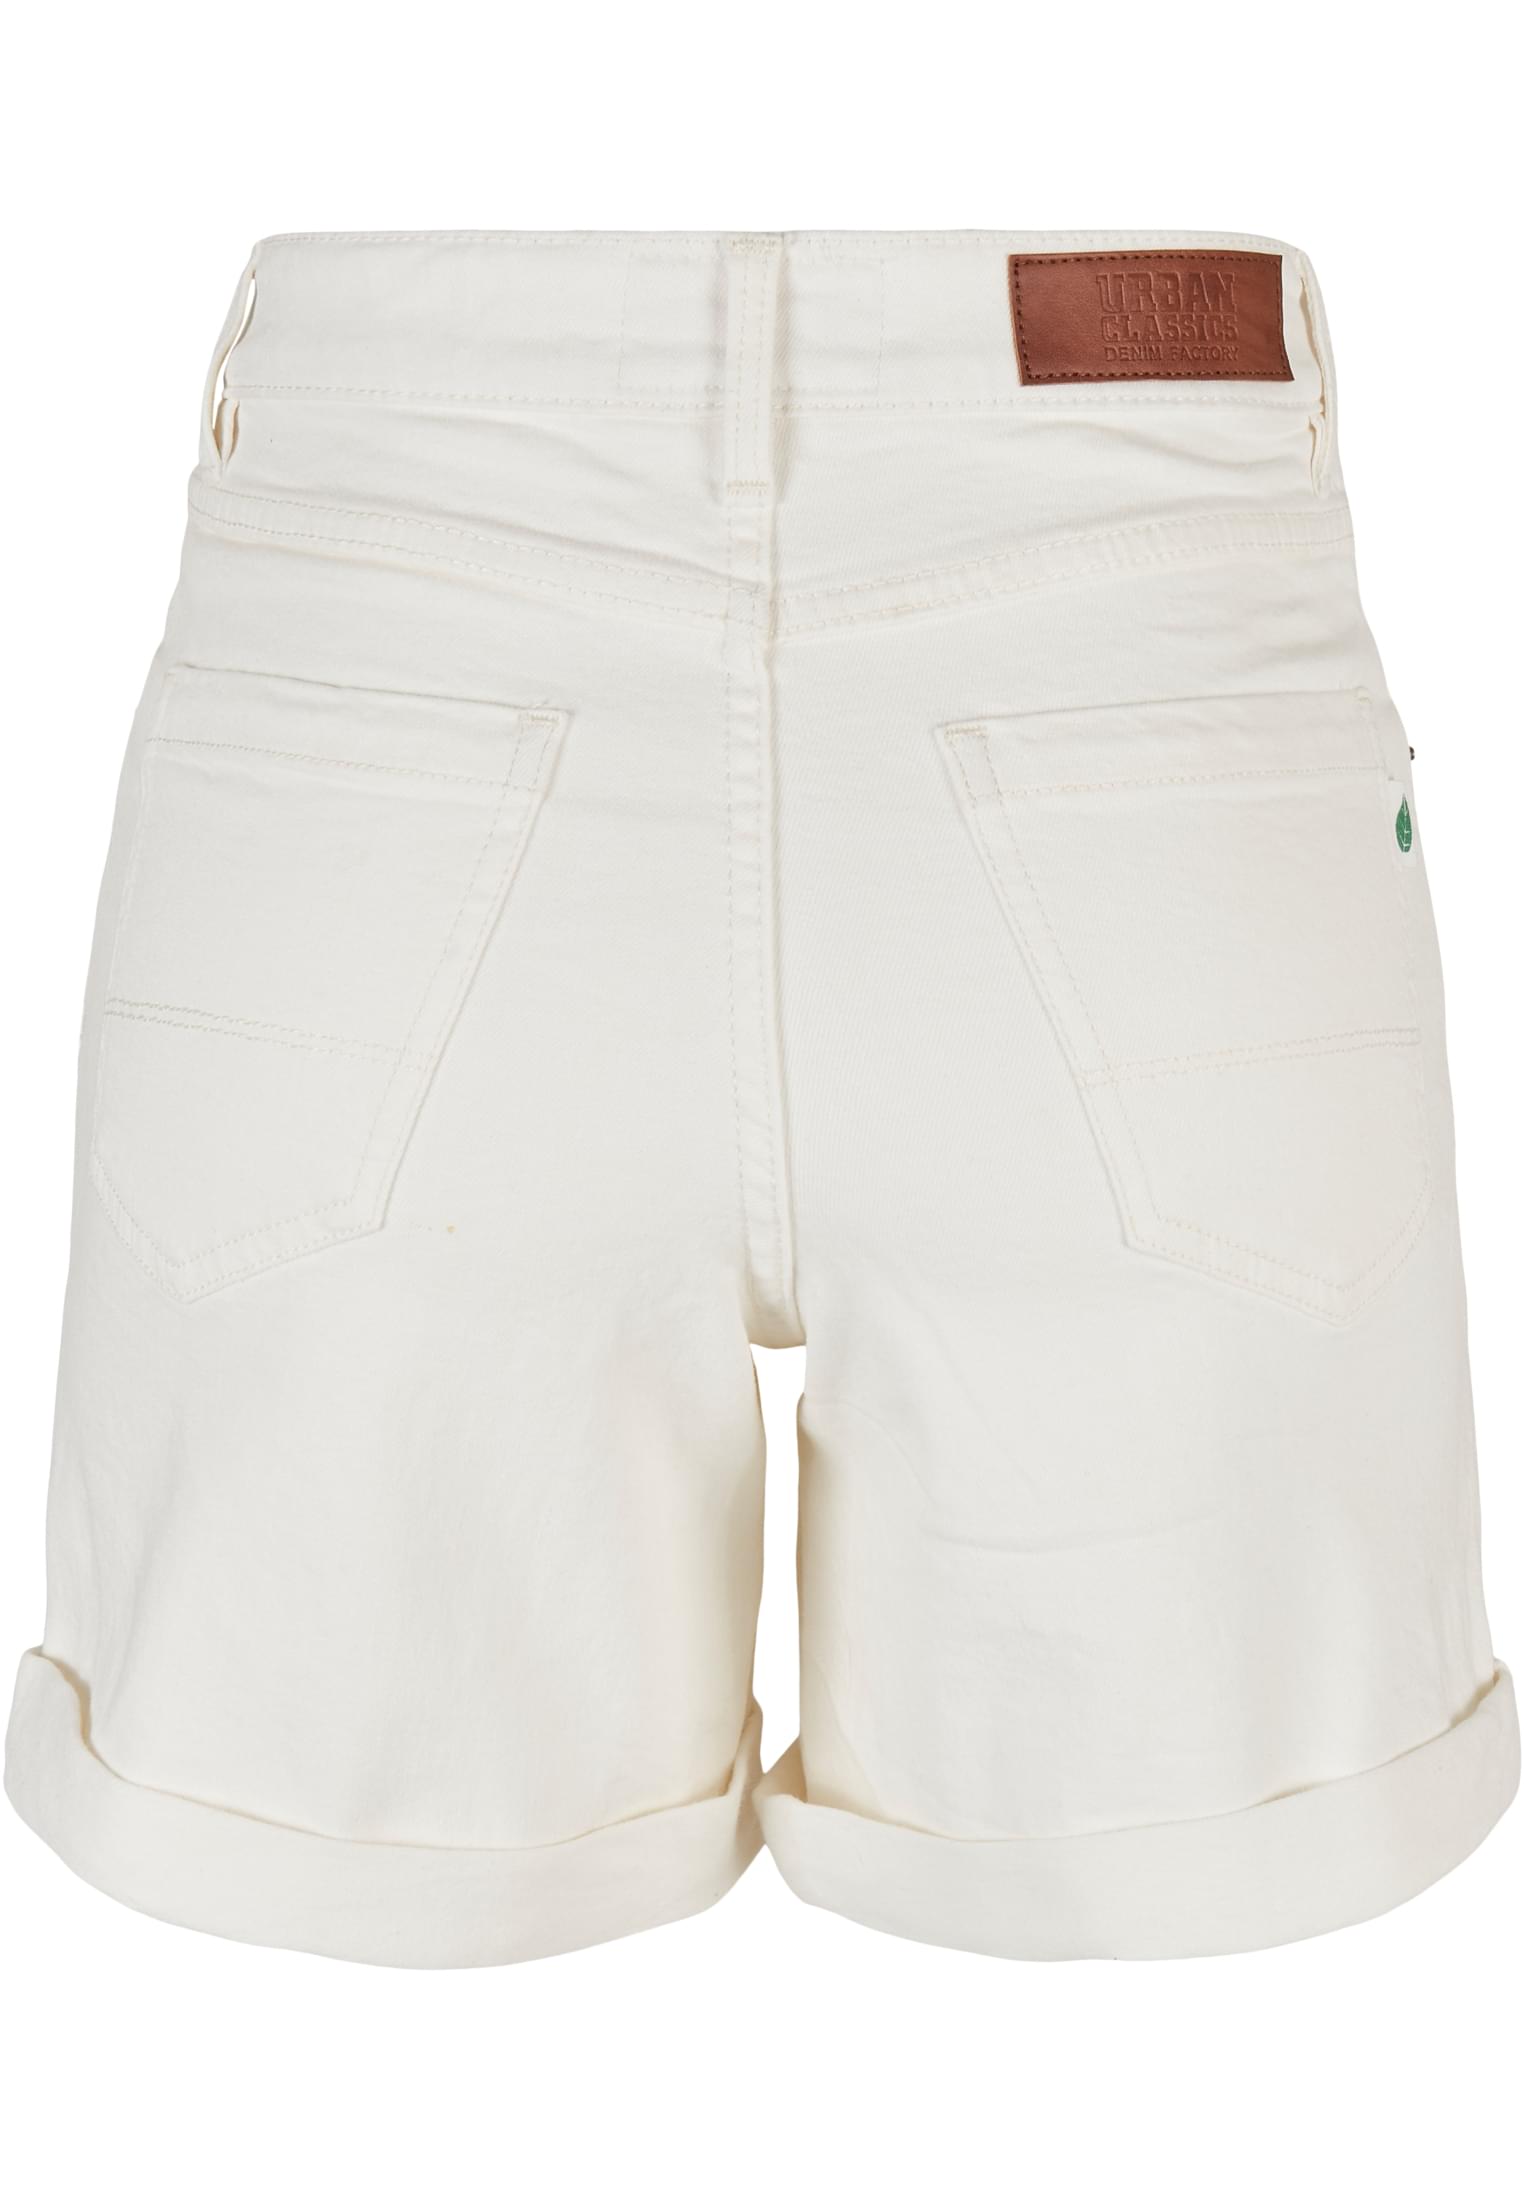 Frauen Ladies Organic Stretch Denim 5 Pocket Shorts in Farbe offwhite raw